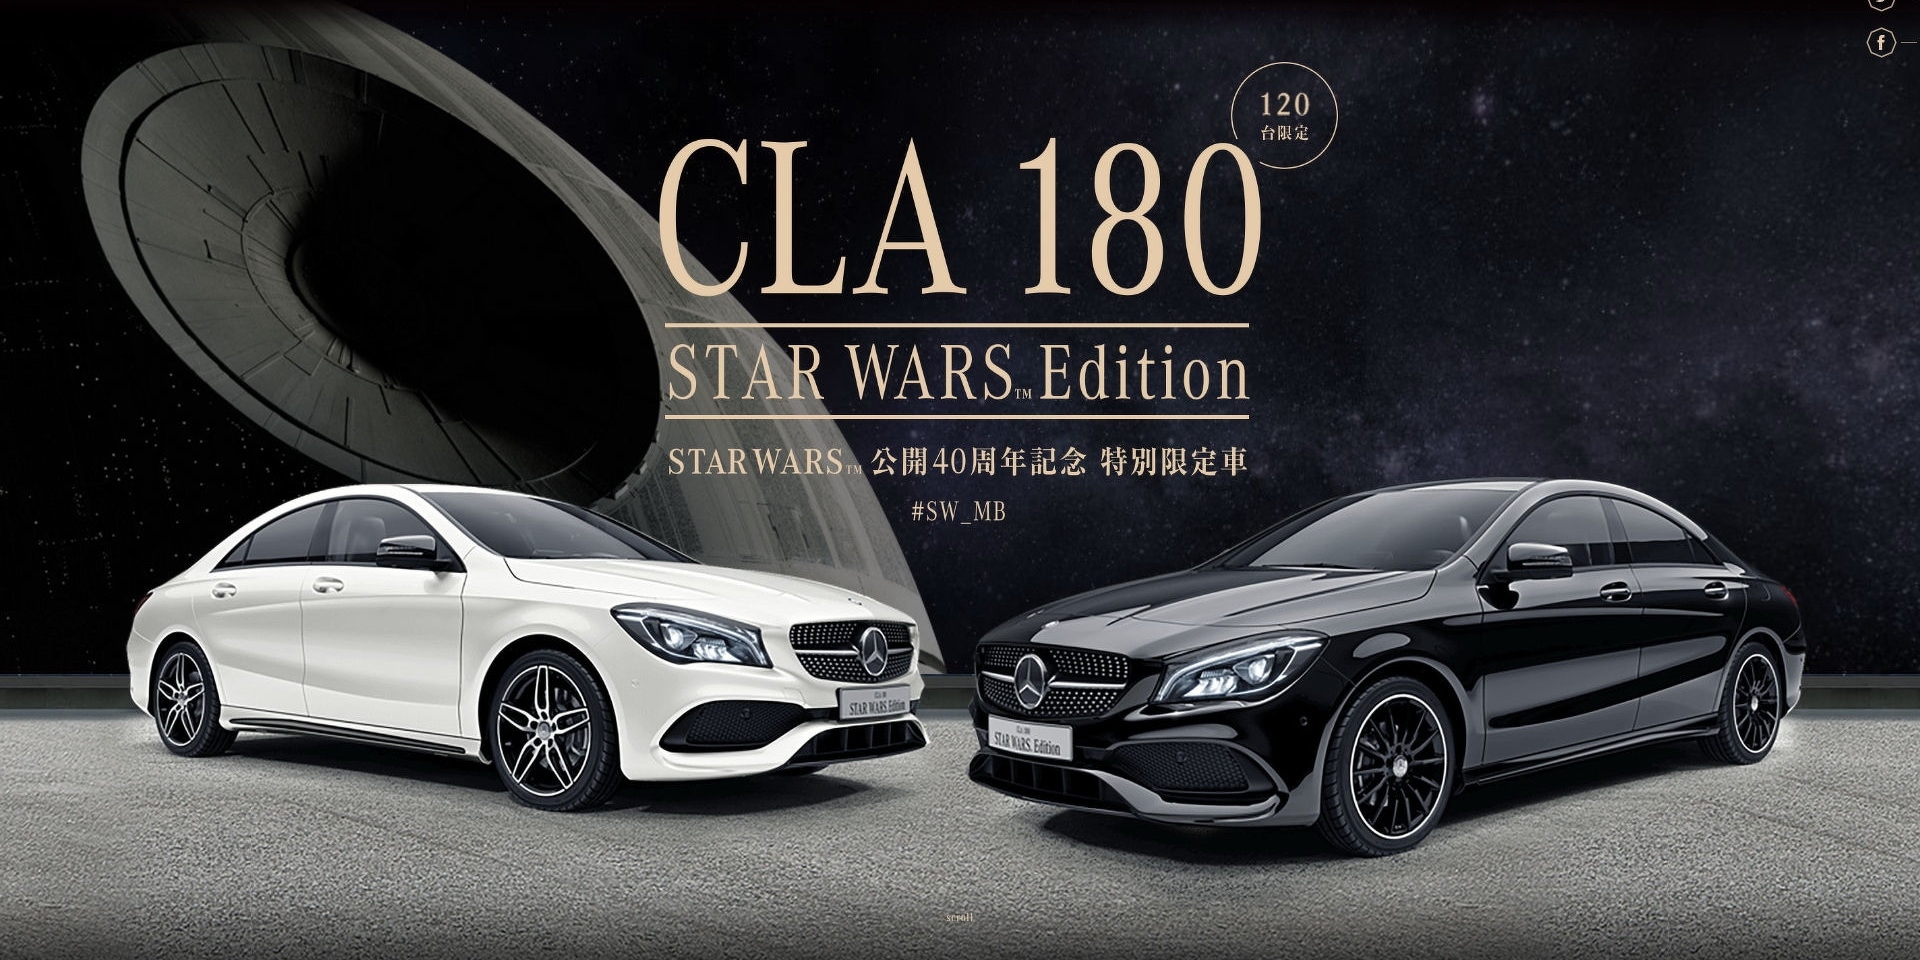 願原力與你同在！Mercedes-Benz CLA180日本限定星戰特仕版！